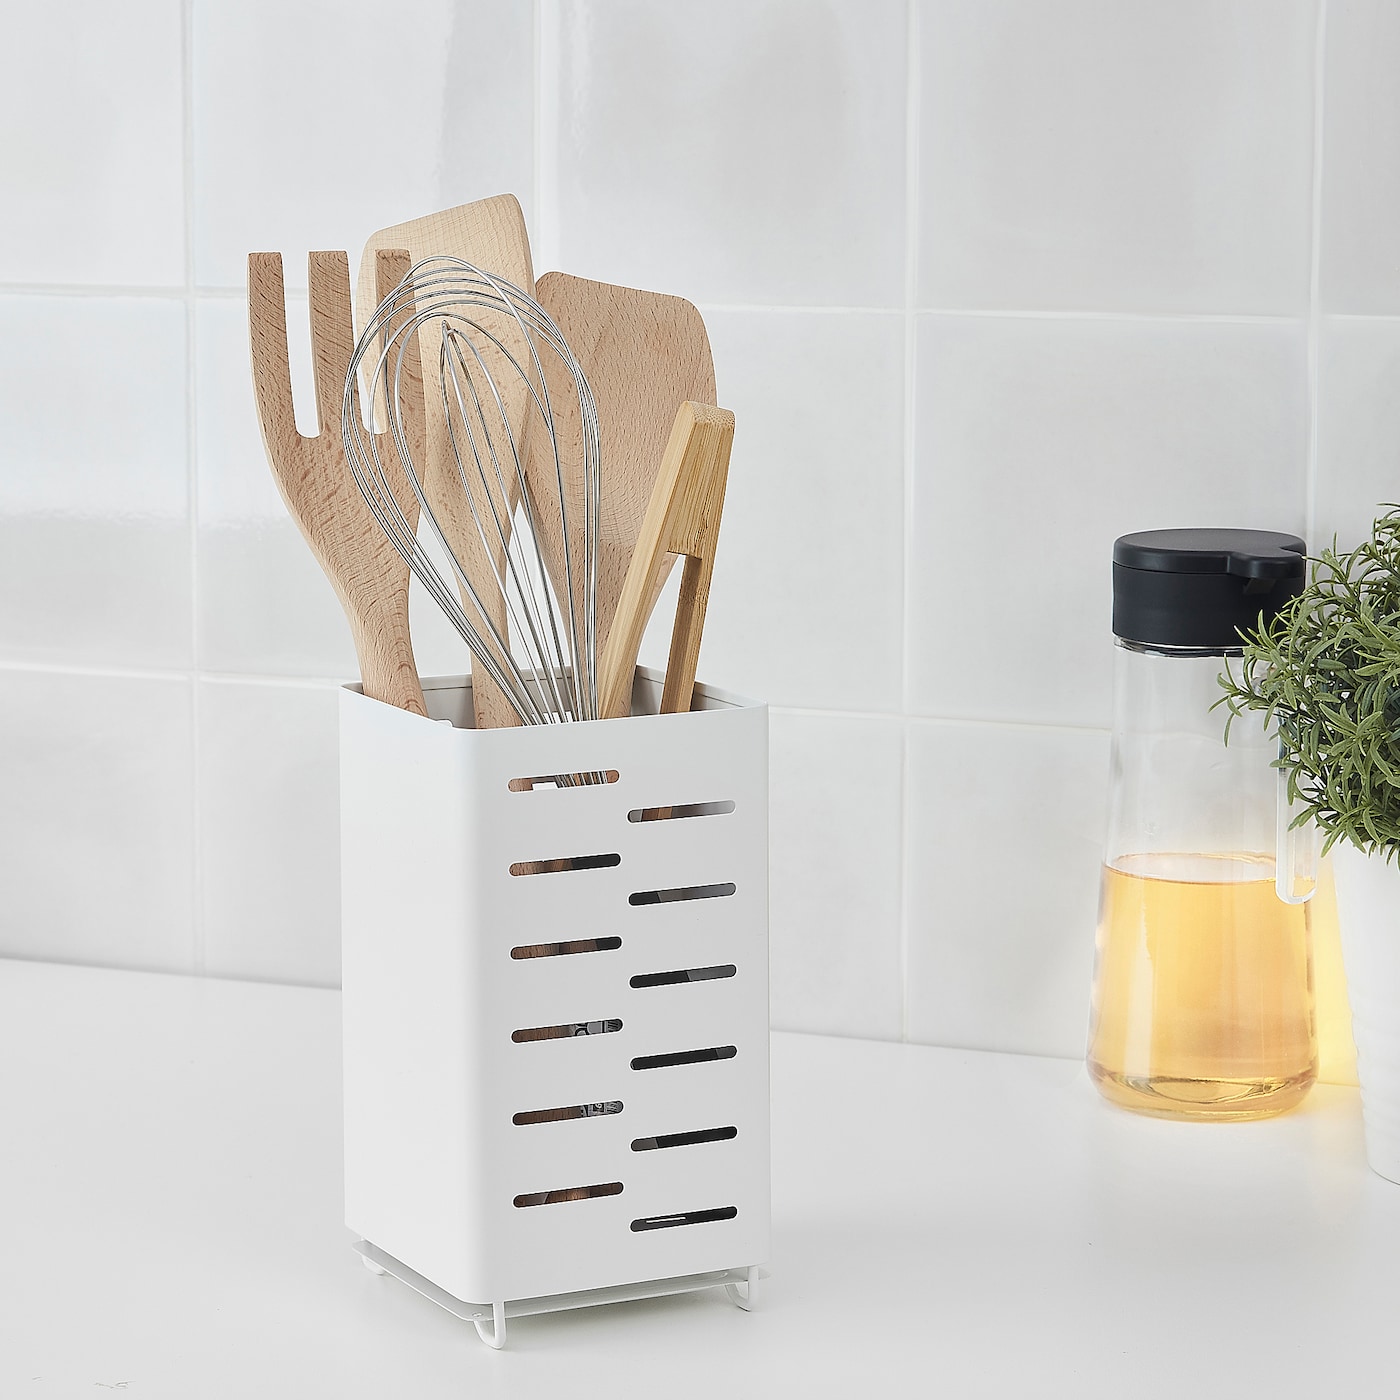 AVSTEG kitchen utensil rack white - IKEA